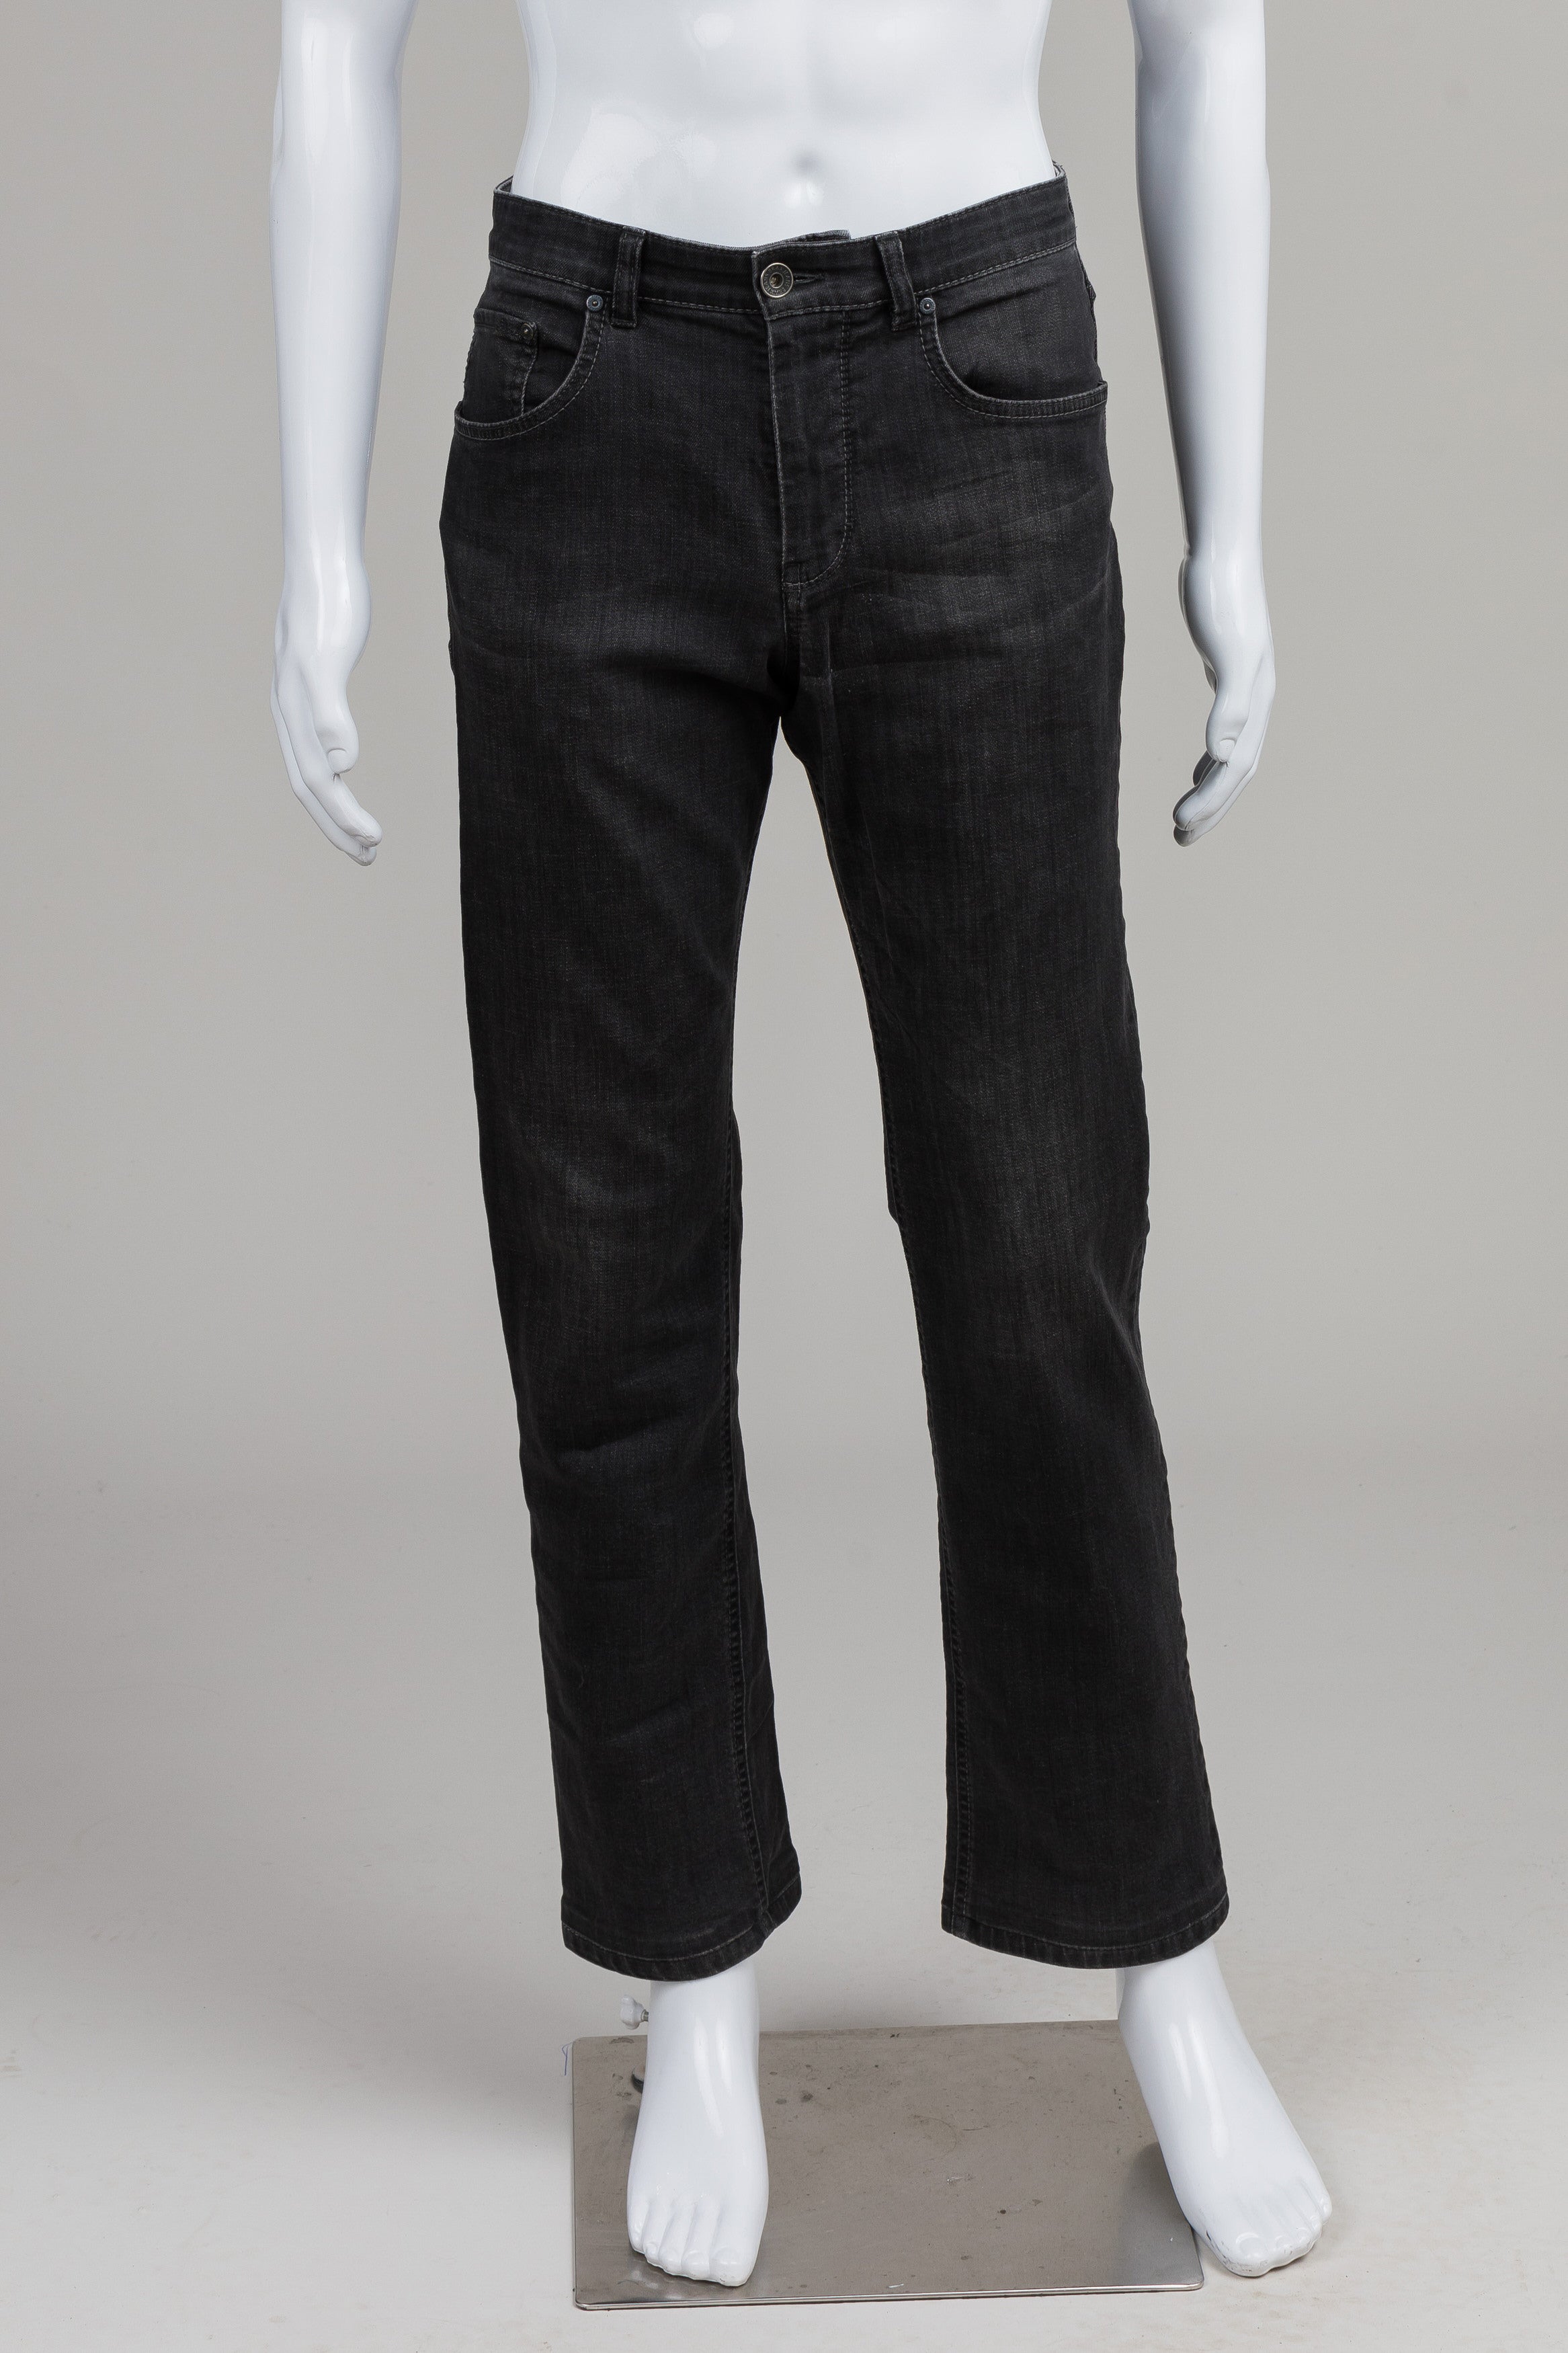 Brax Black Jeans (32x34)